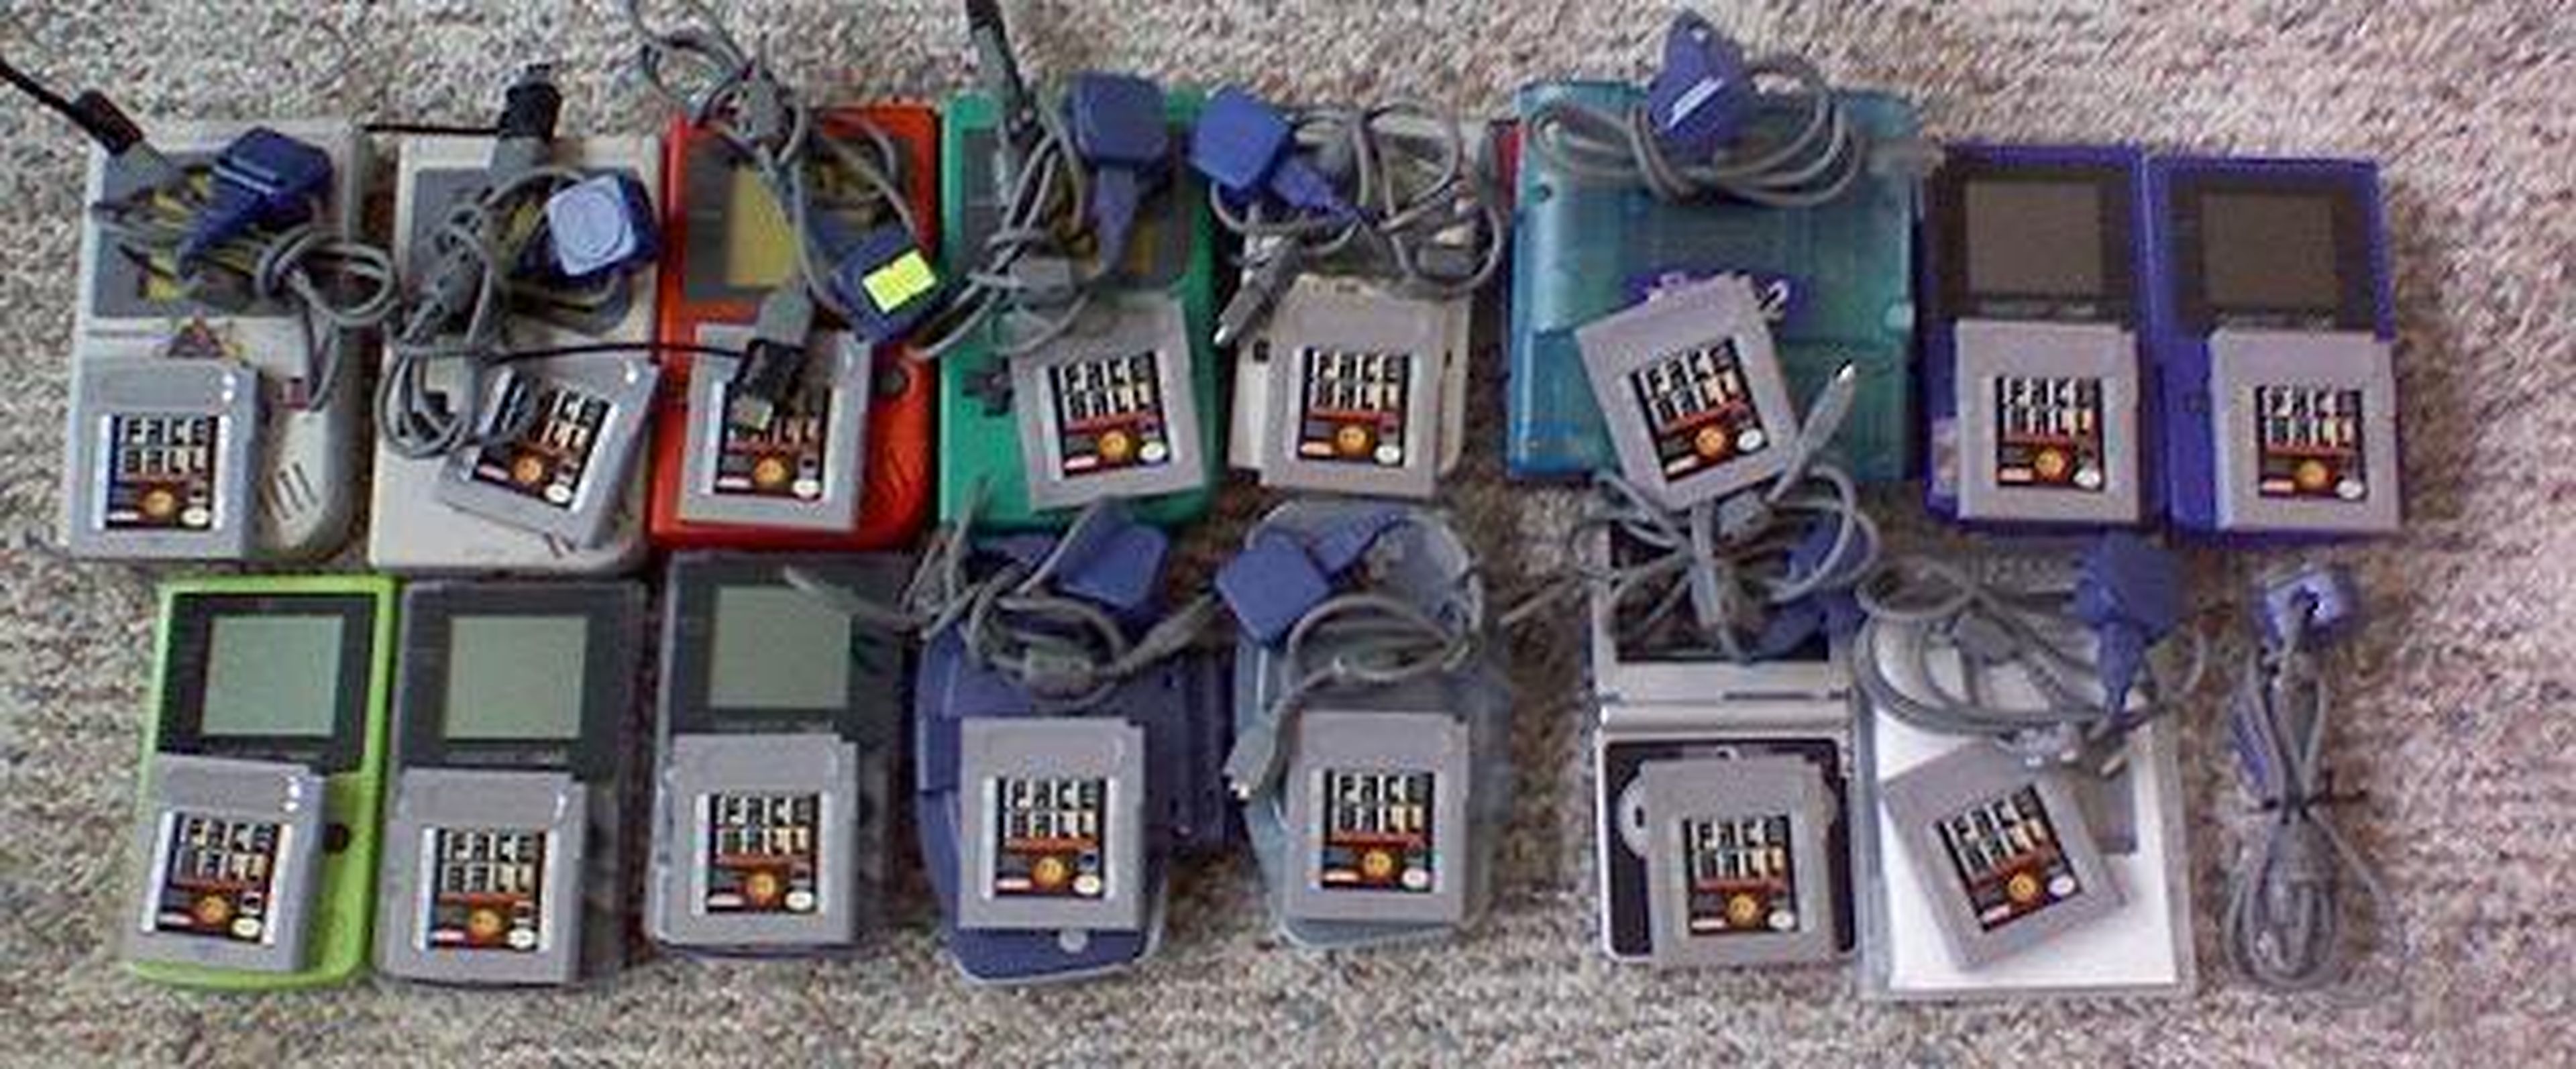 Game Boy cumple 25 años: 5 curiosidades